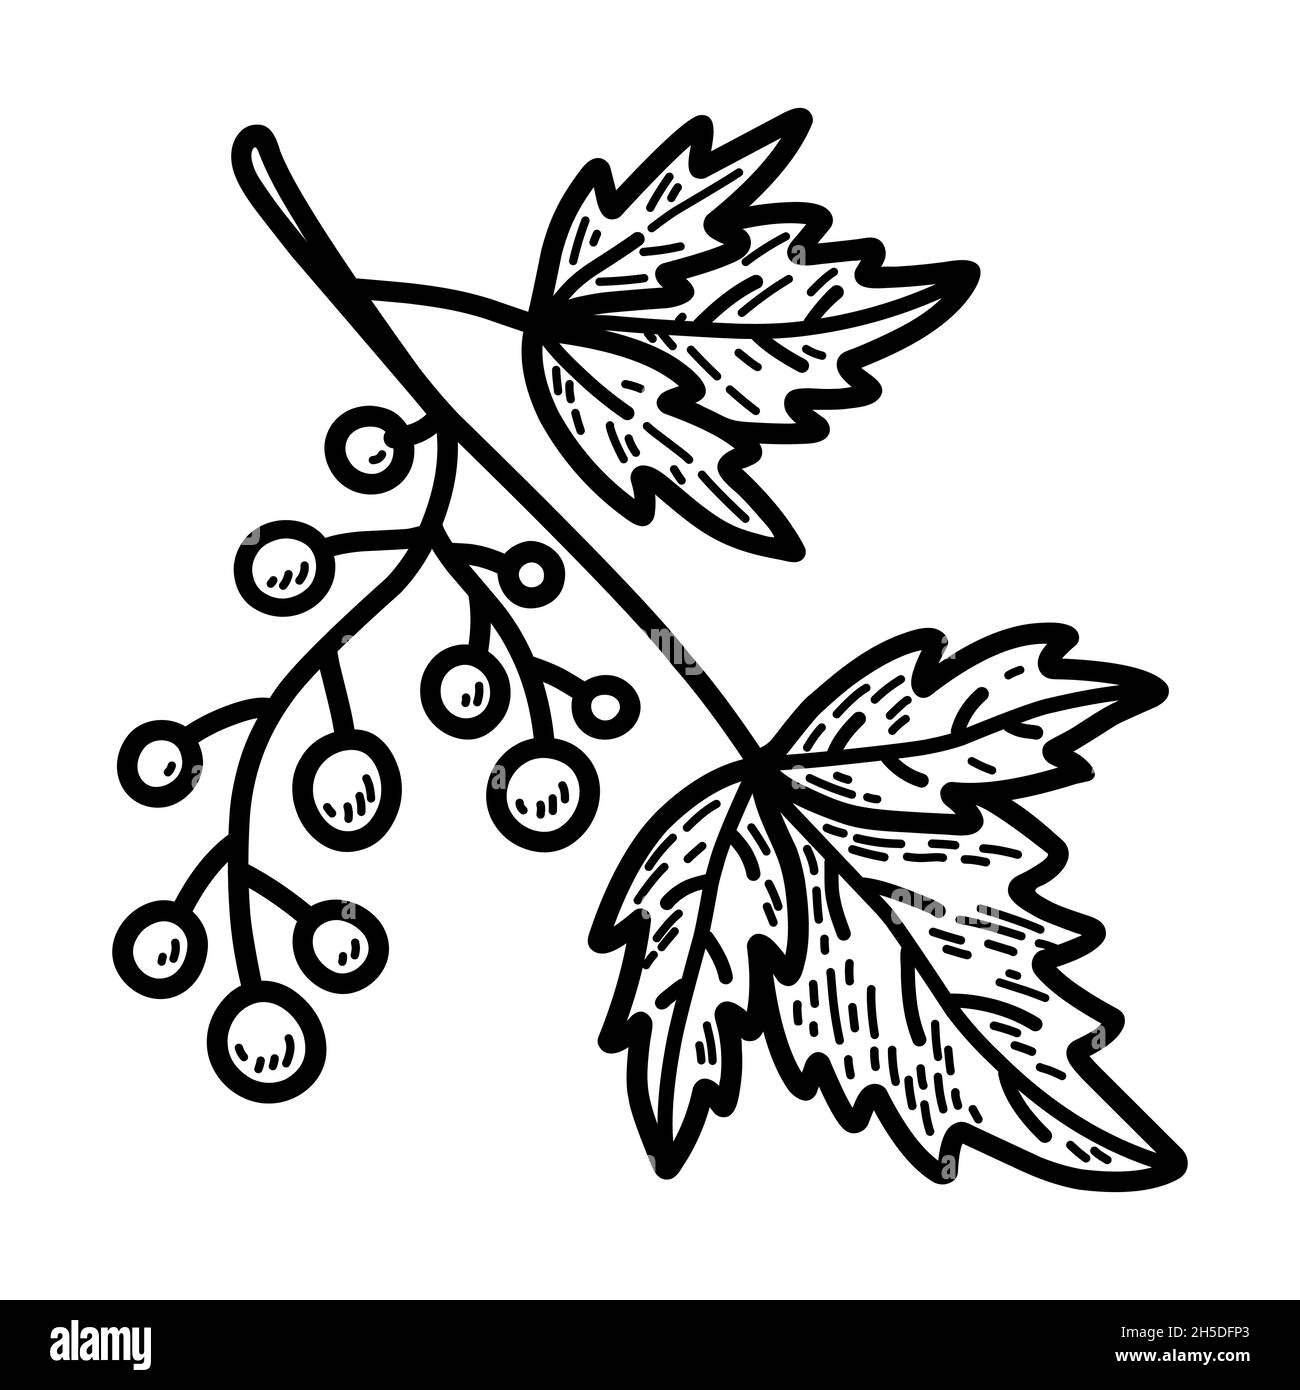 Ramitas con bayas y hojas aisladas sobre fondo blanco. Ilustración vectorial dibujada a mano en estilo fideos. Perfecto para diseños de otoño, tarjetas, logotipos y decoraciones. Ilustración del Vector